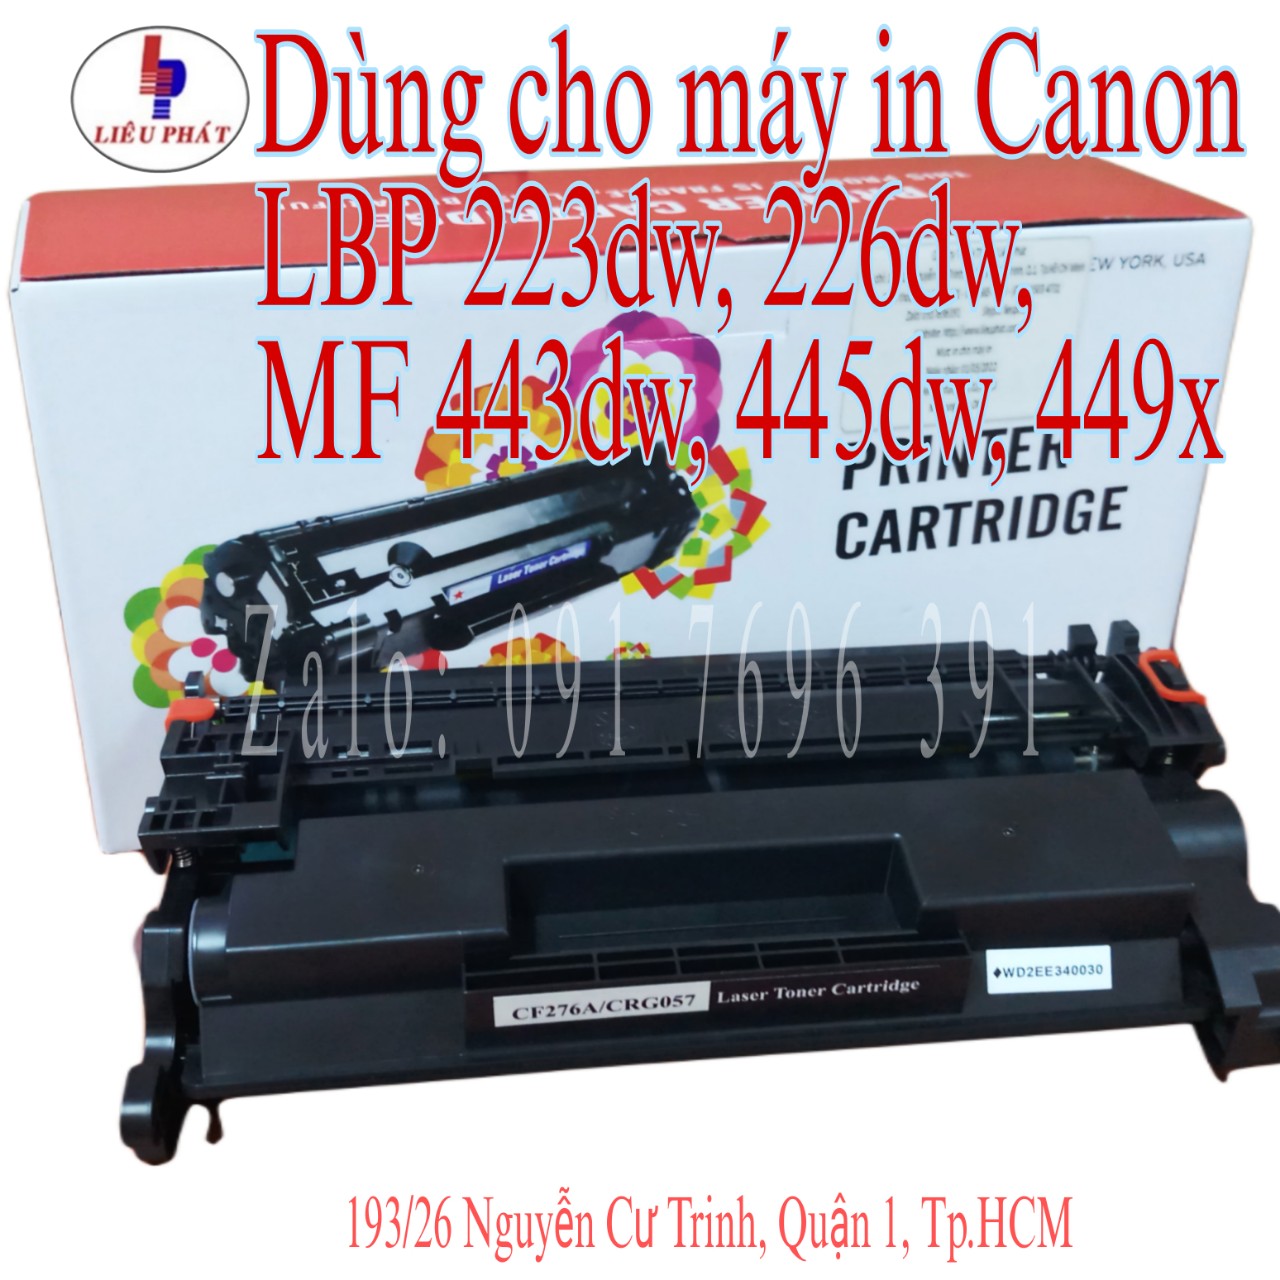 Mực in CRG 057 dùng máy in Canon LBP 223dw/ 226dw/ đa năng MF 443dw/ 445dw - cartridge không dùng chíp, mới 100%